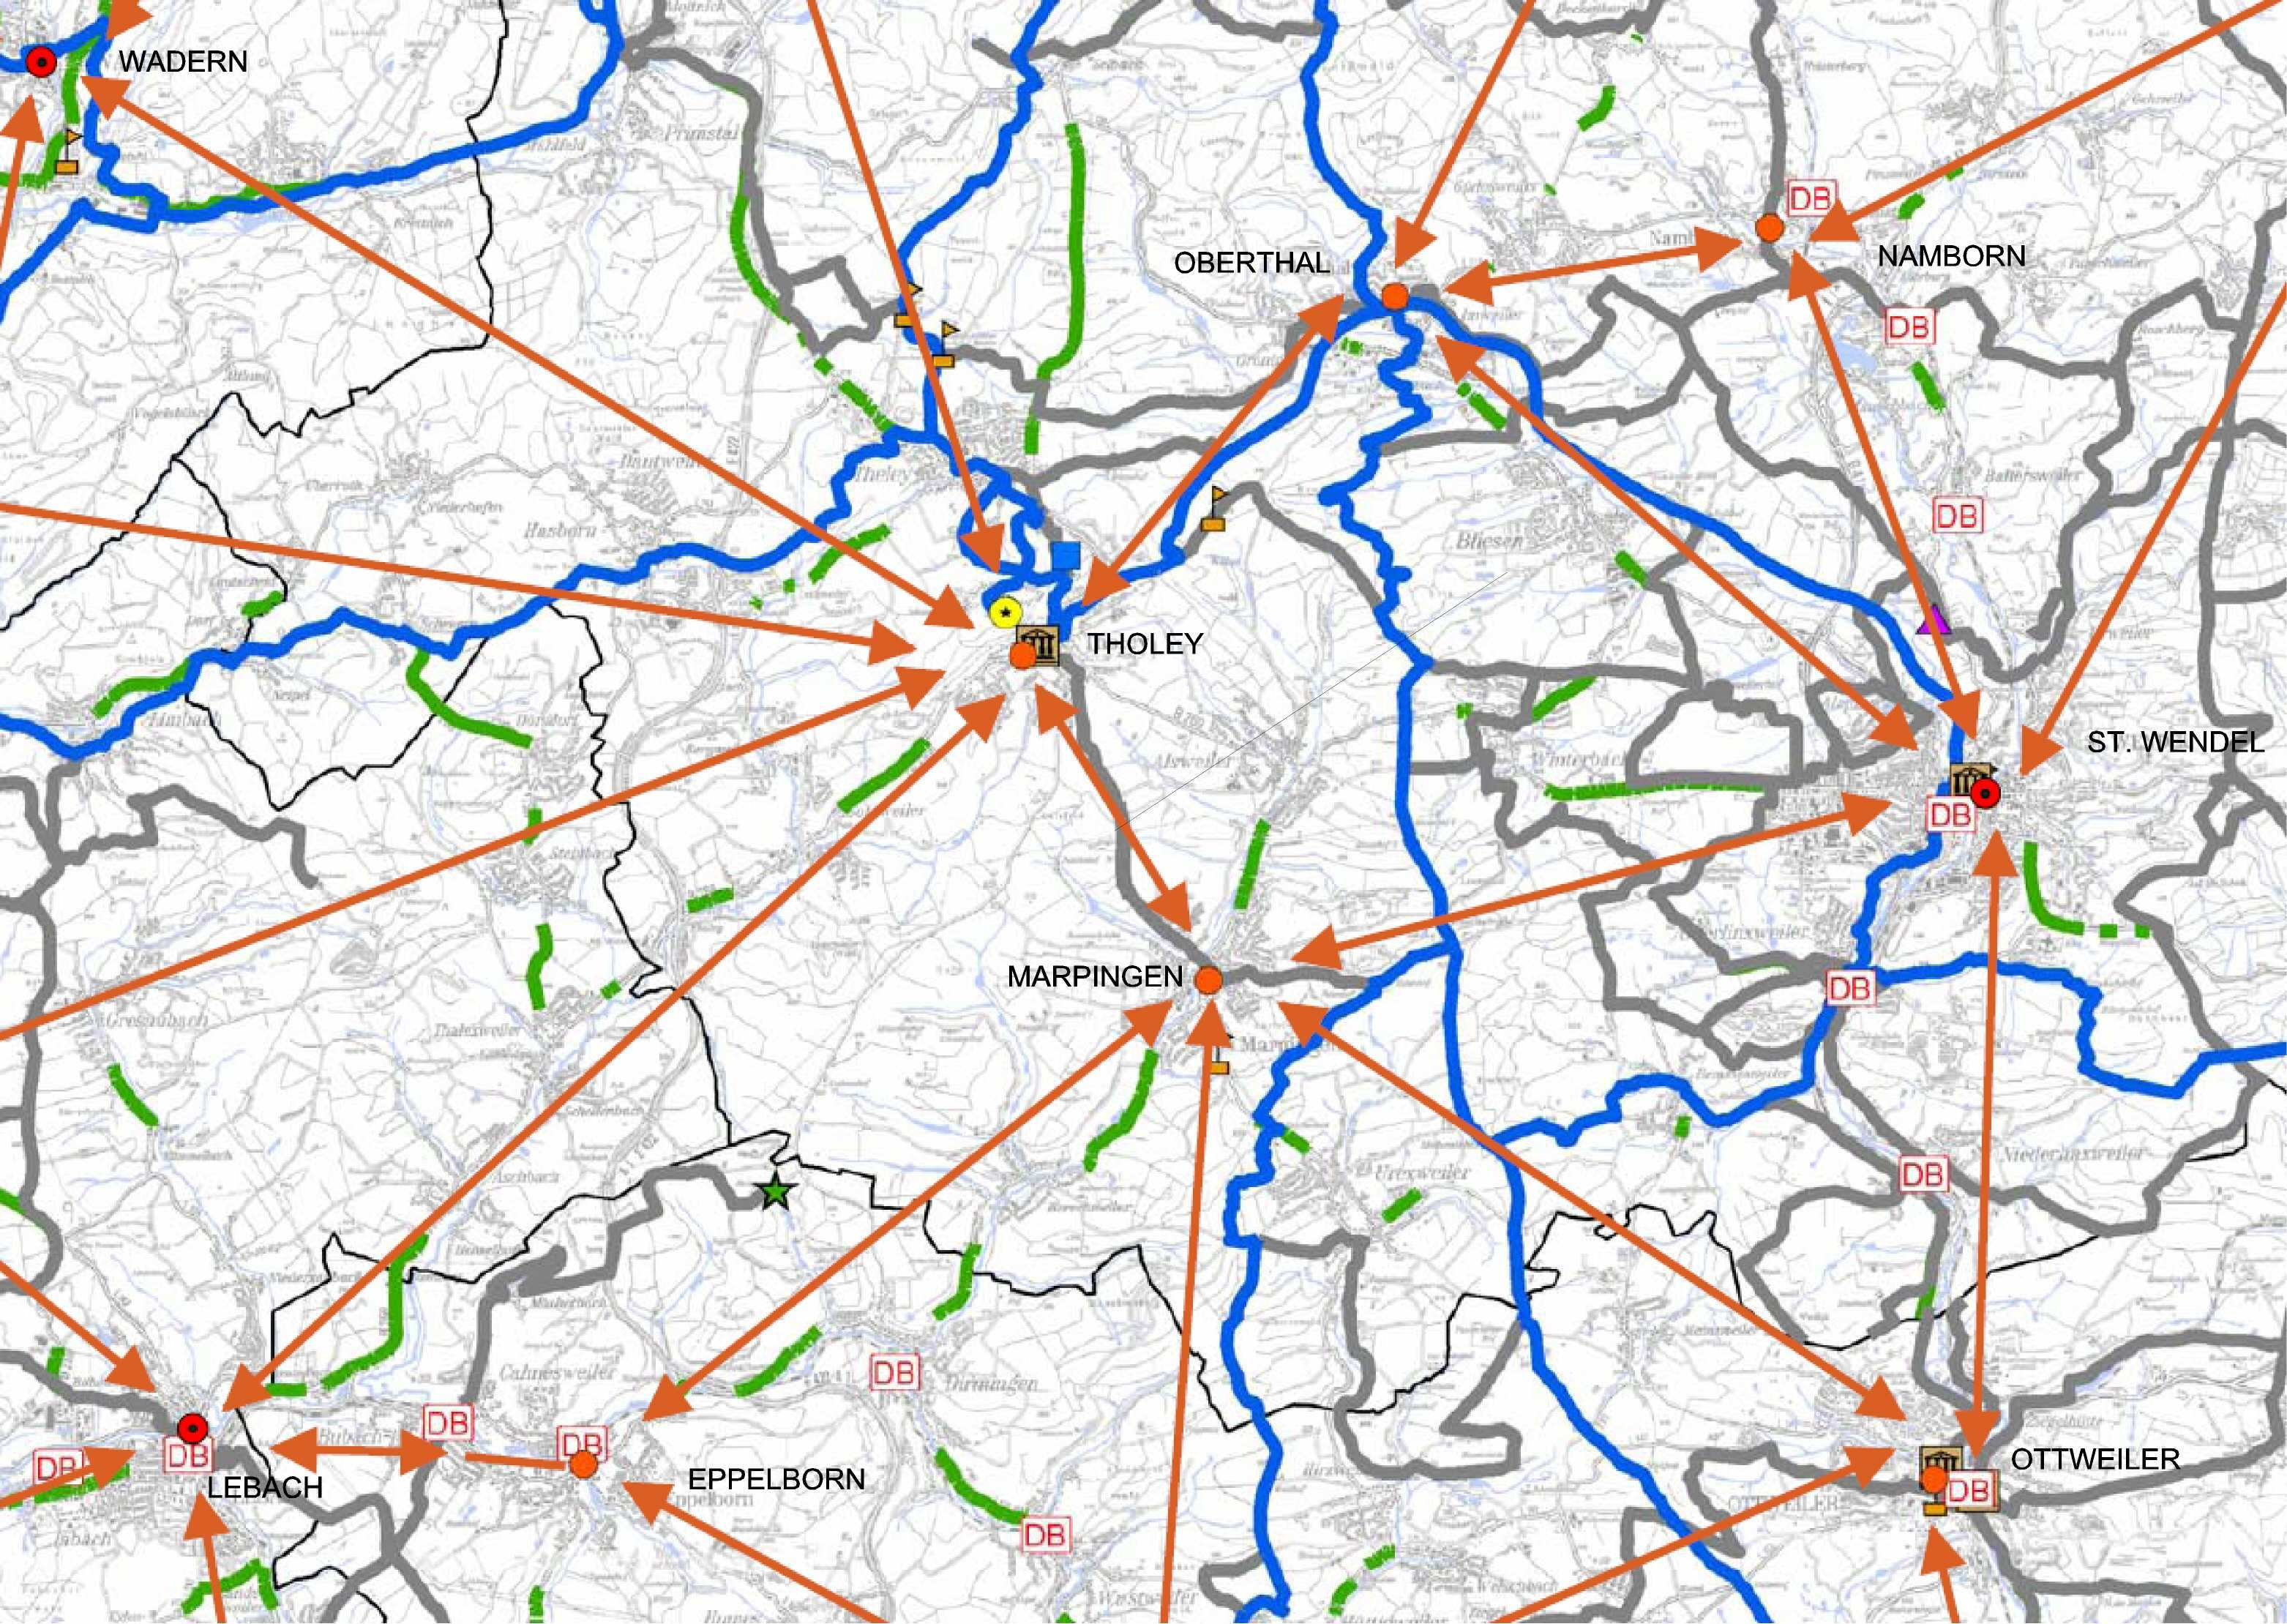 PGV Landesradverkehrsplan Saarland 28 Das Wunschliniennetz, das in Form eines Arbeitsplanes erstellt wurde, berücksichtigt im Sinne einer praxisorientierten Planungsgrundlage soweit möglich bereits